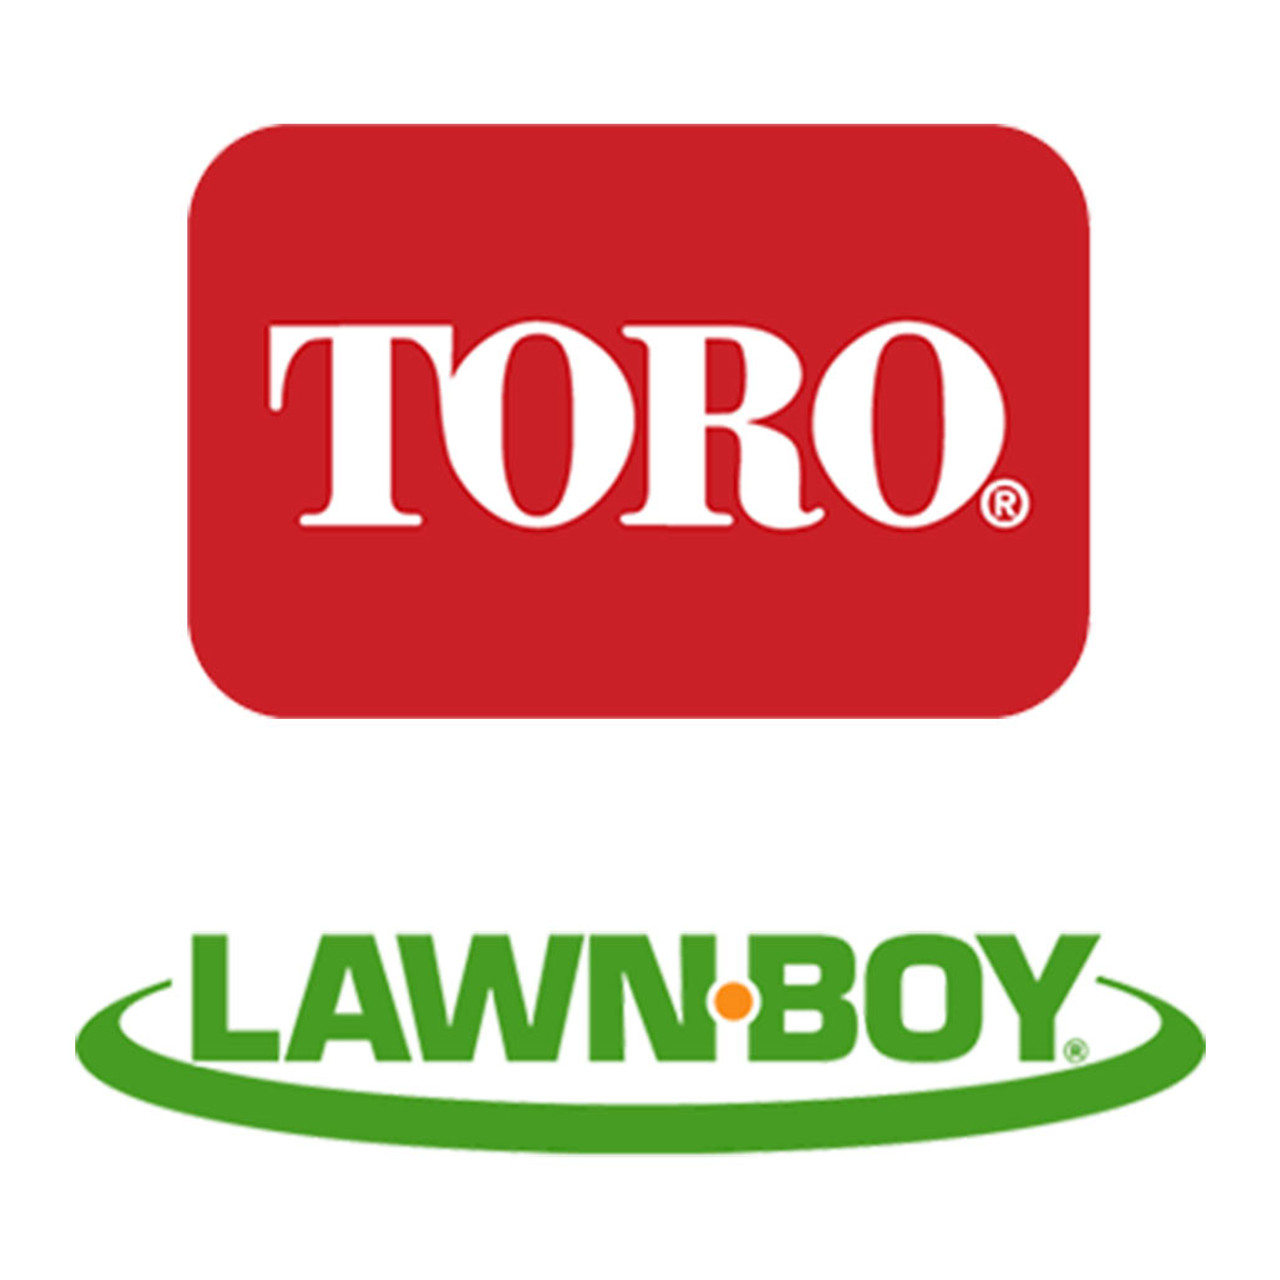 Toro Lawn-Boy 139-1670 Flange-Pulley